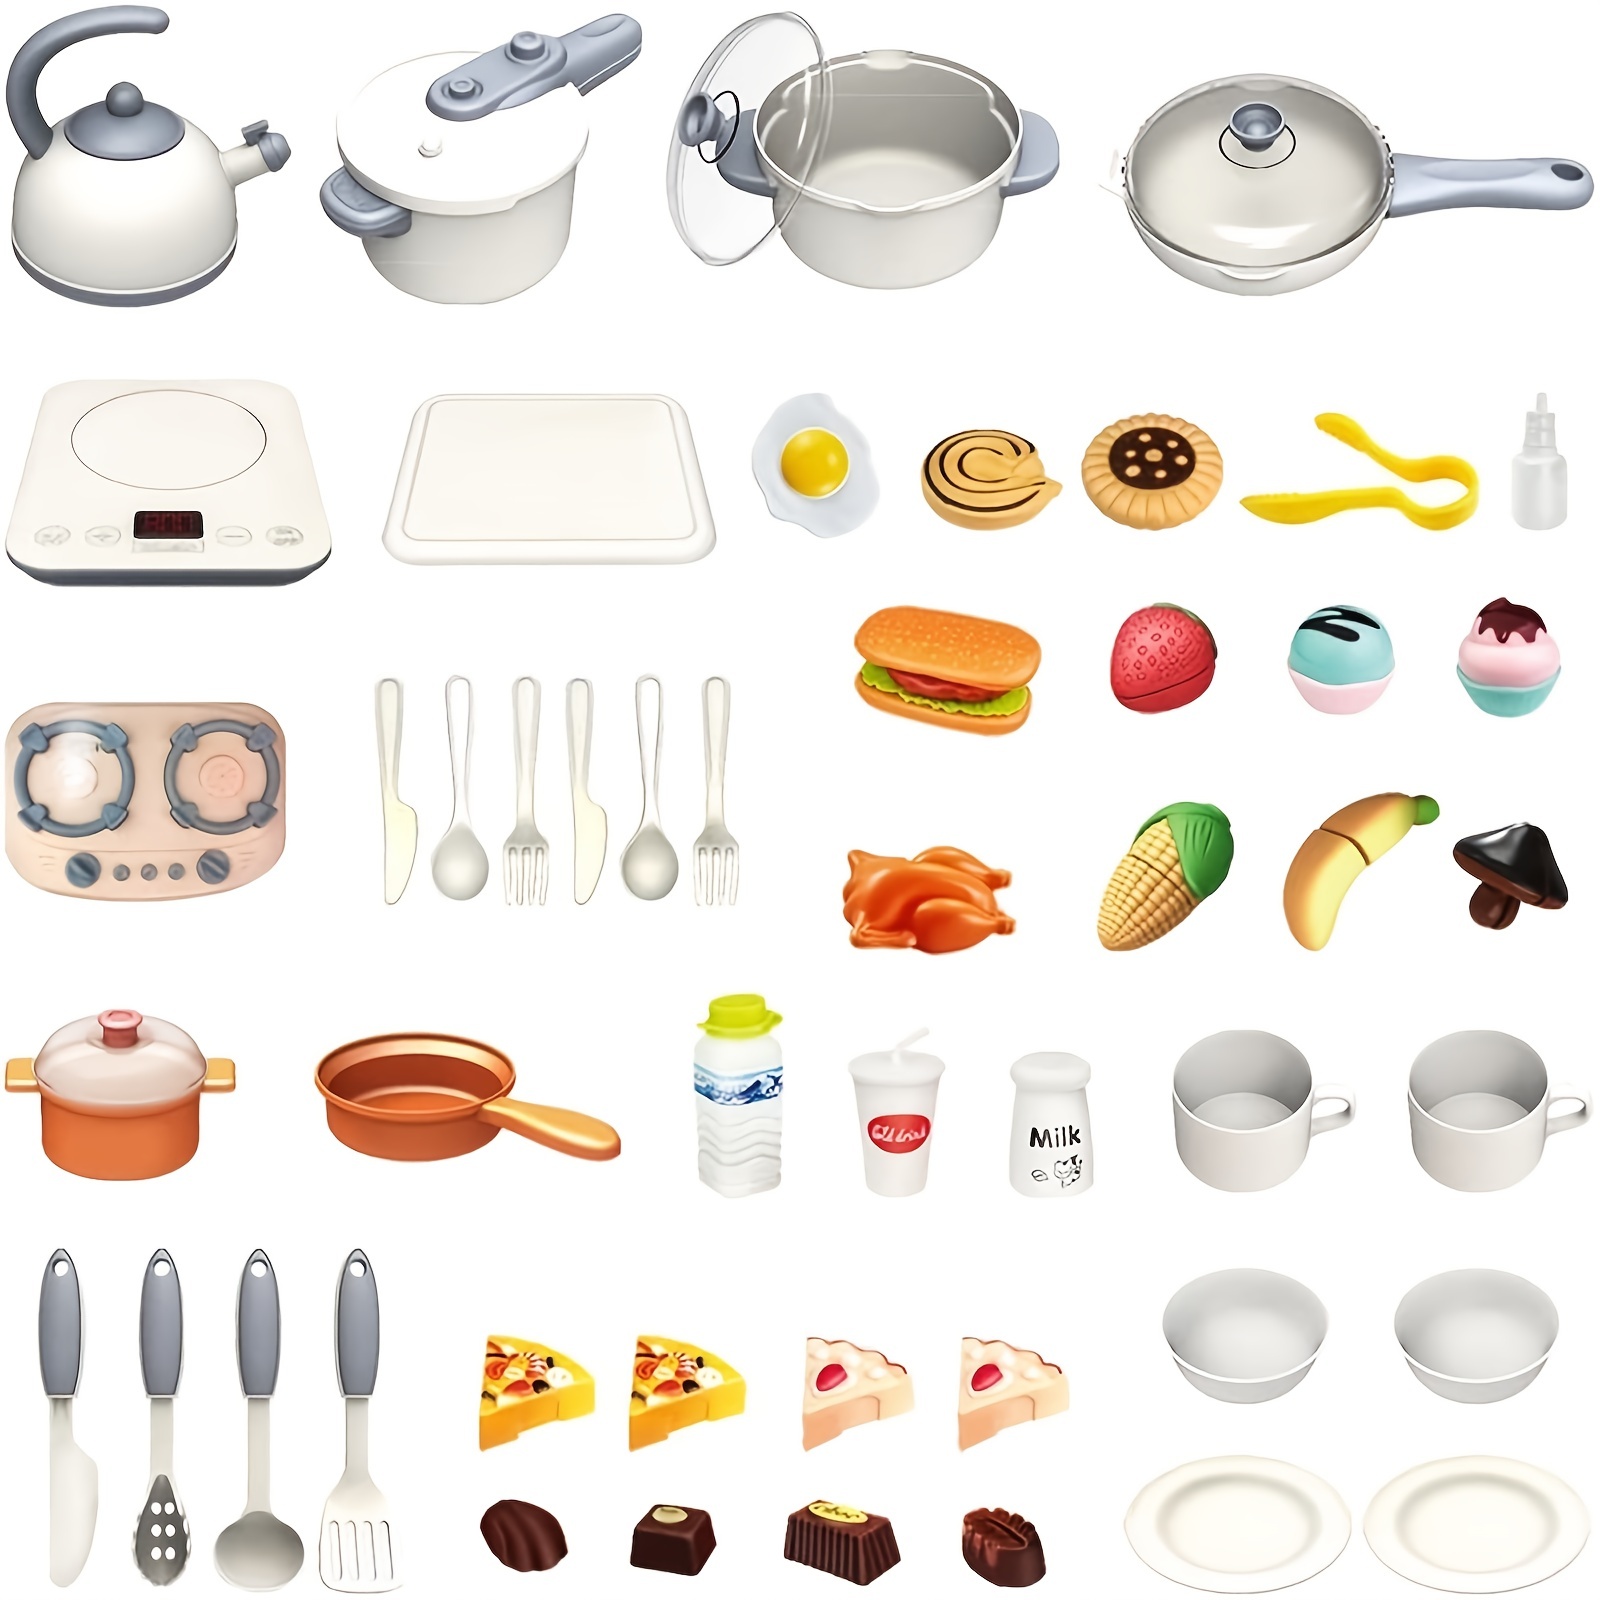 Juego de juguetes de cocina para niños: Theefun 45 piezas de juego de  cocina de simulación con olla de presión de plástico, sartén, utensilios de